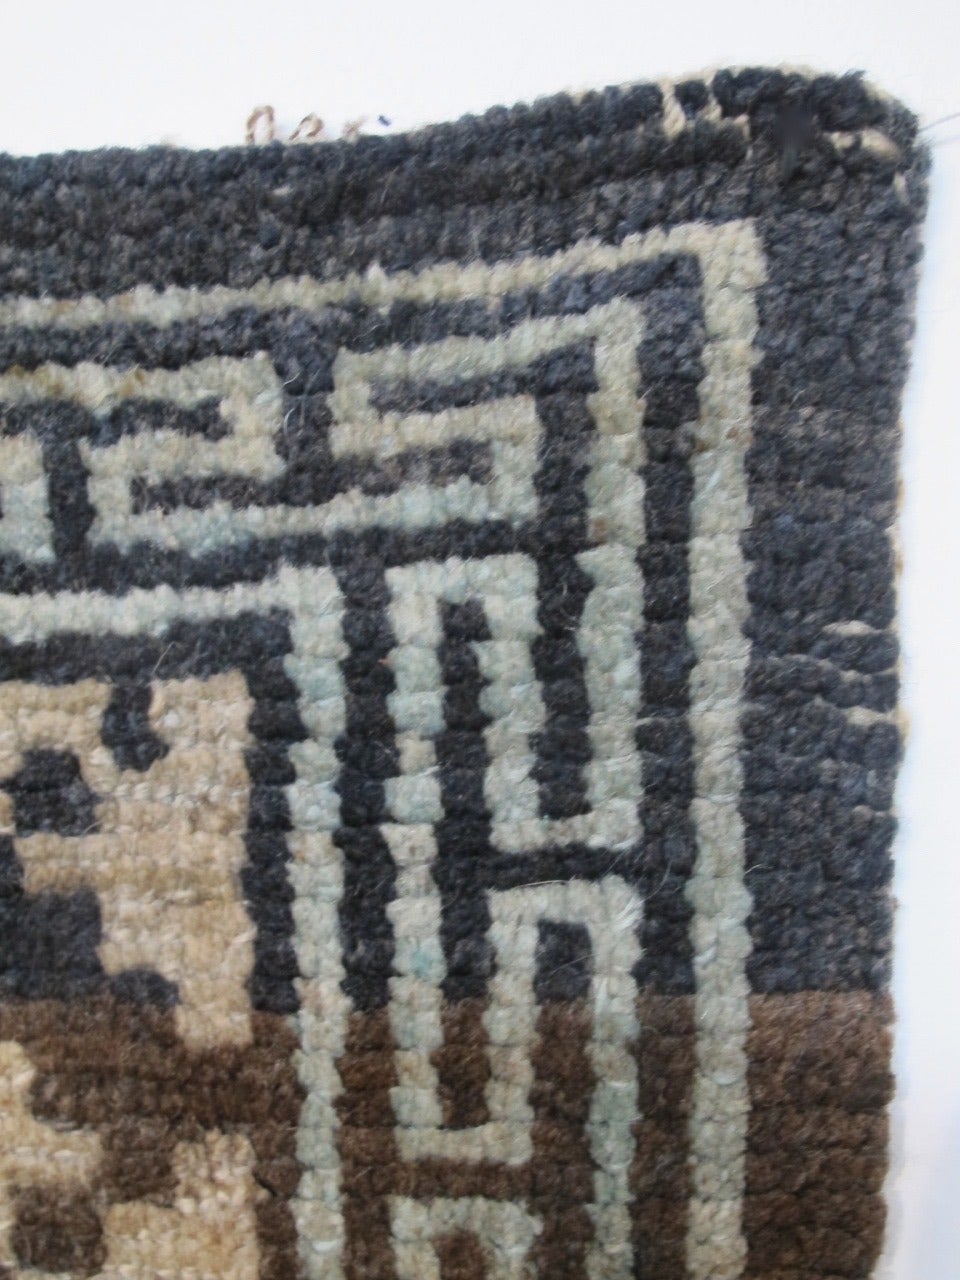 Dyed Tibetan Carpet